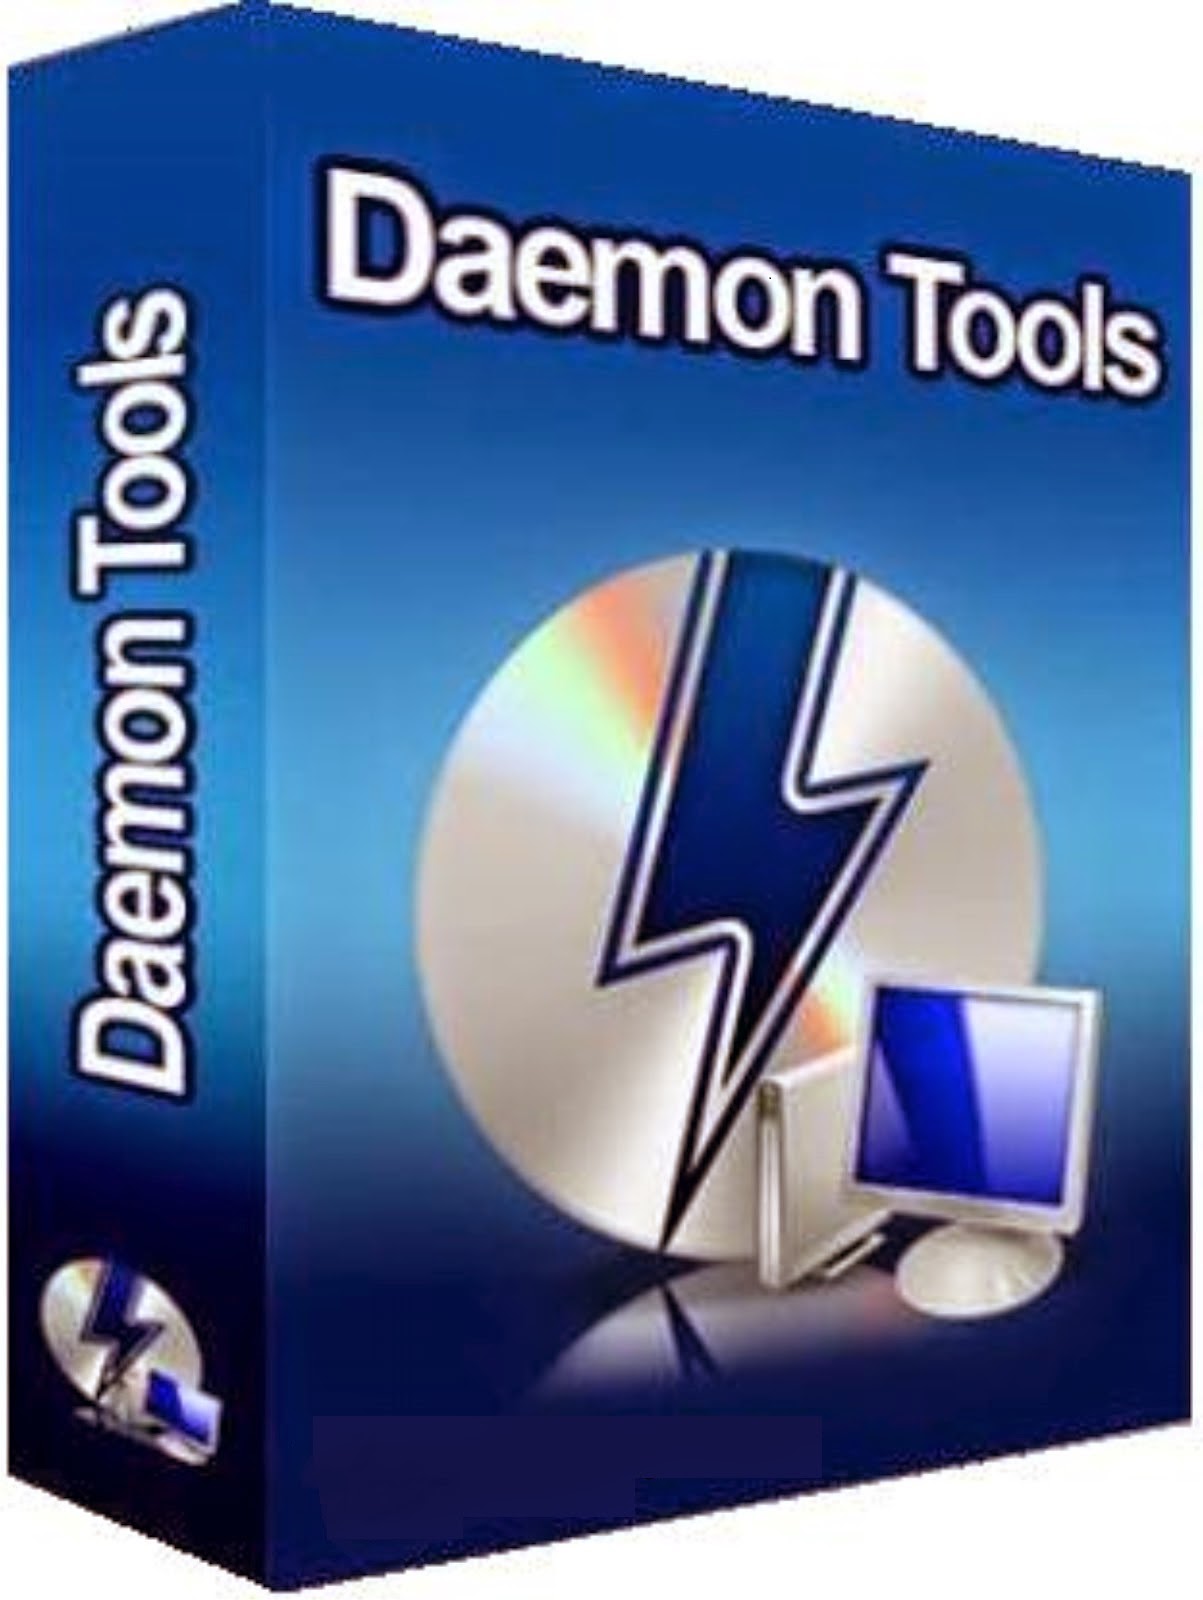 daemon tools virtual cd free download